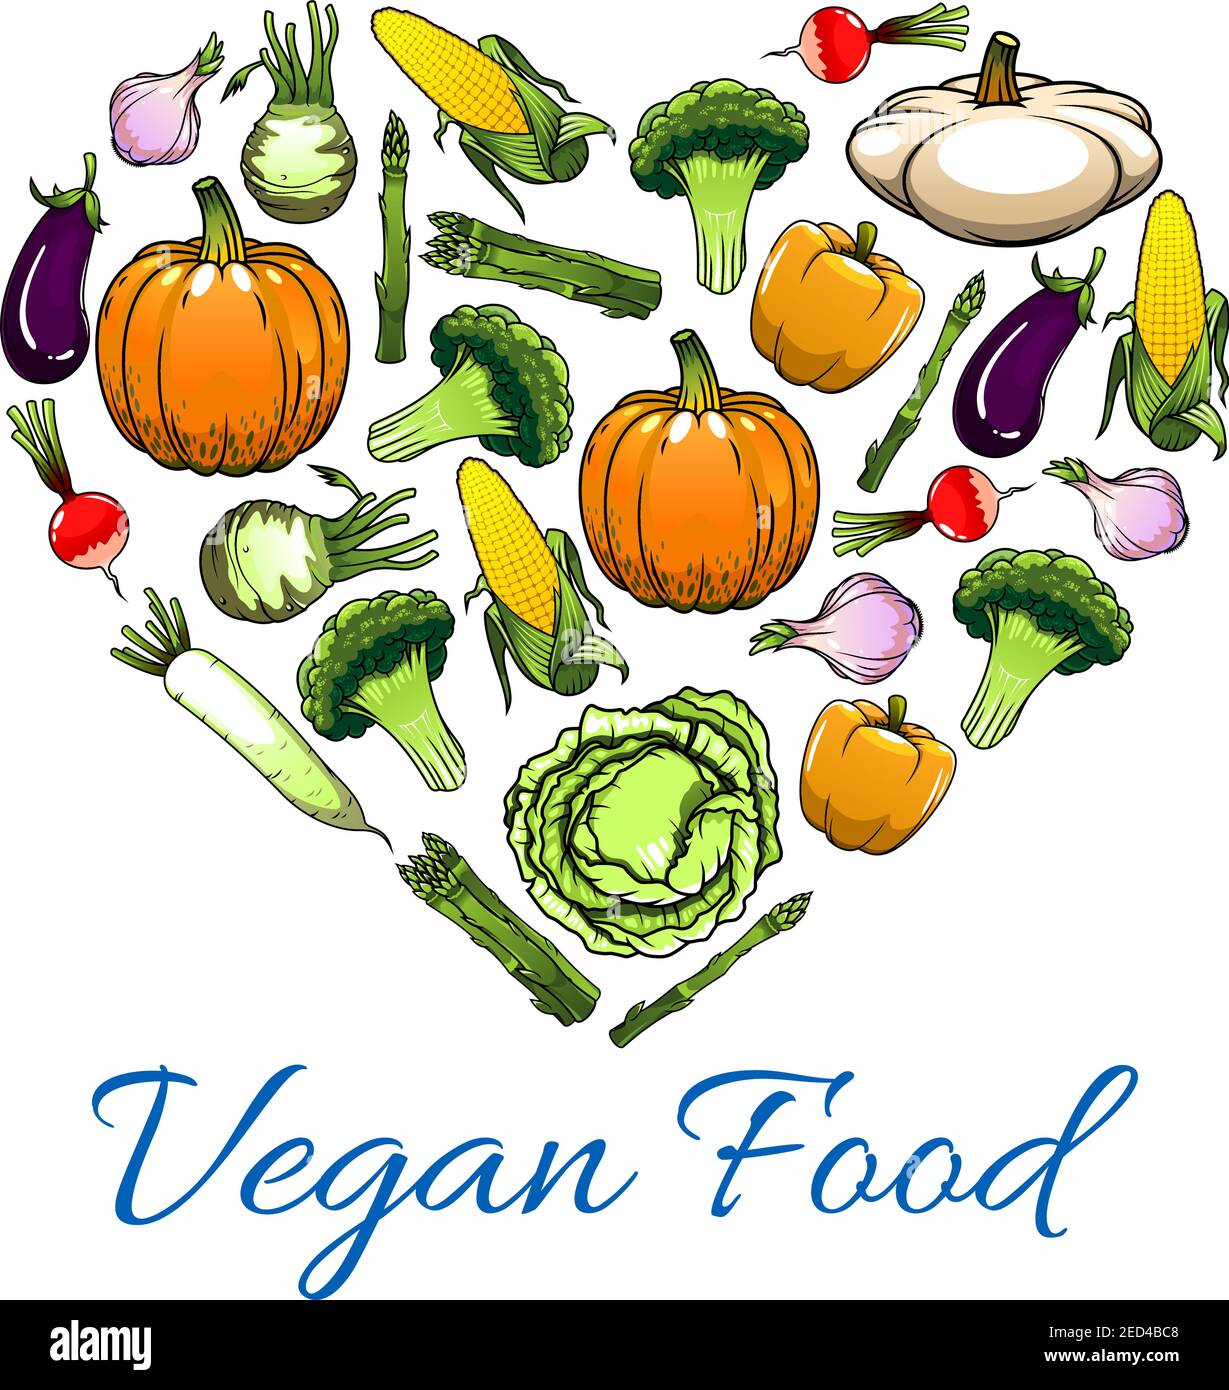 Vegetable love. Любовь и овощи. Овощи сердце. Значок веганской еды. Овощи из любов.